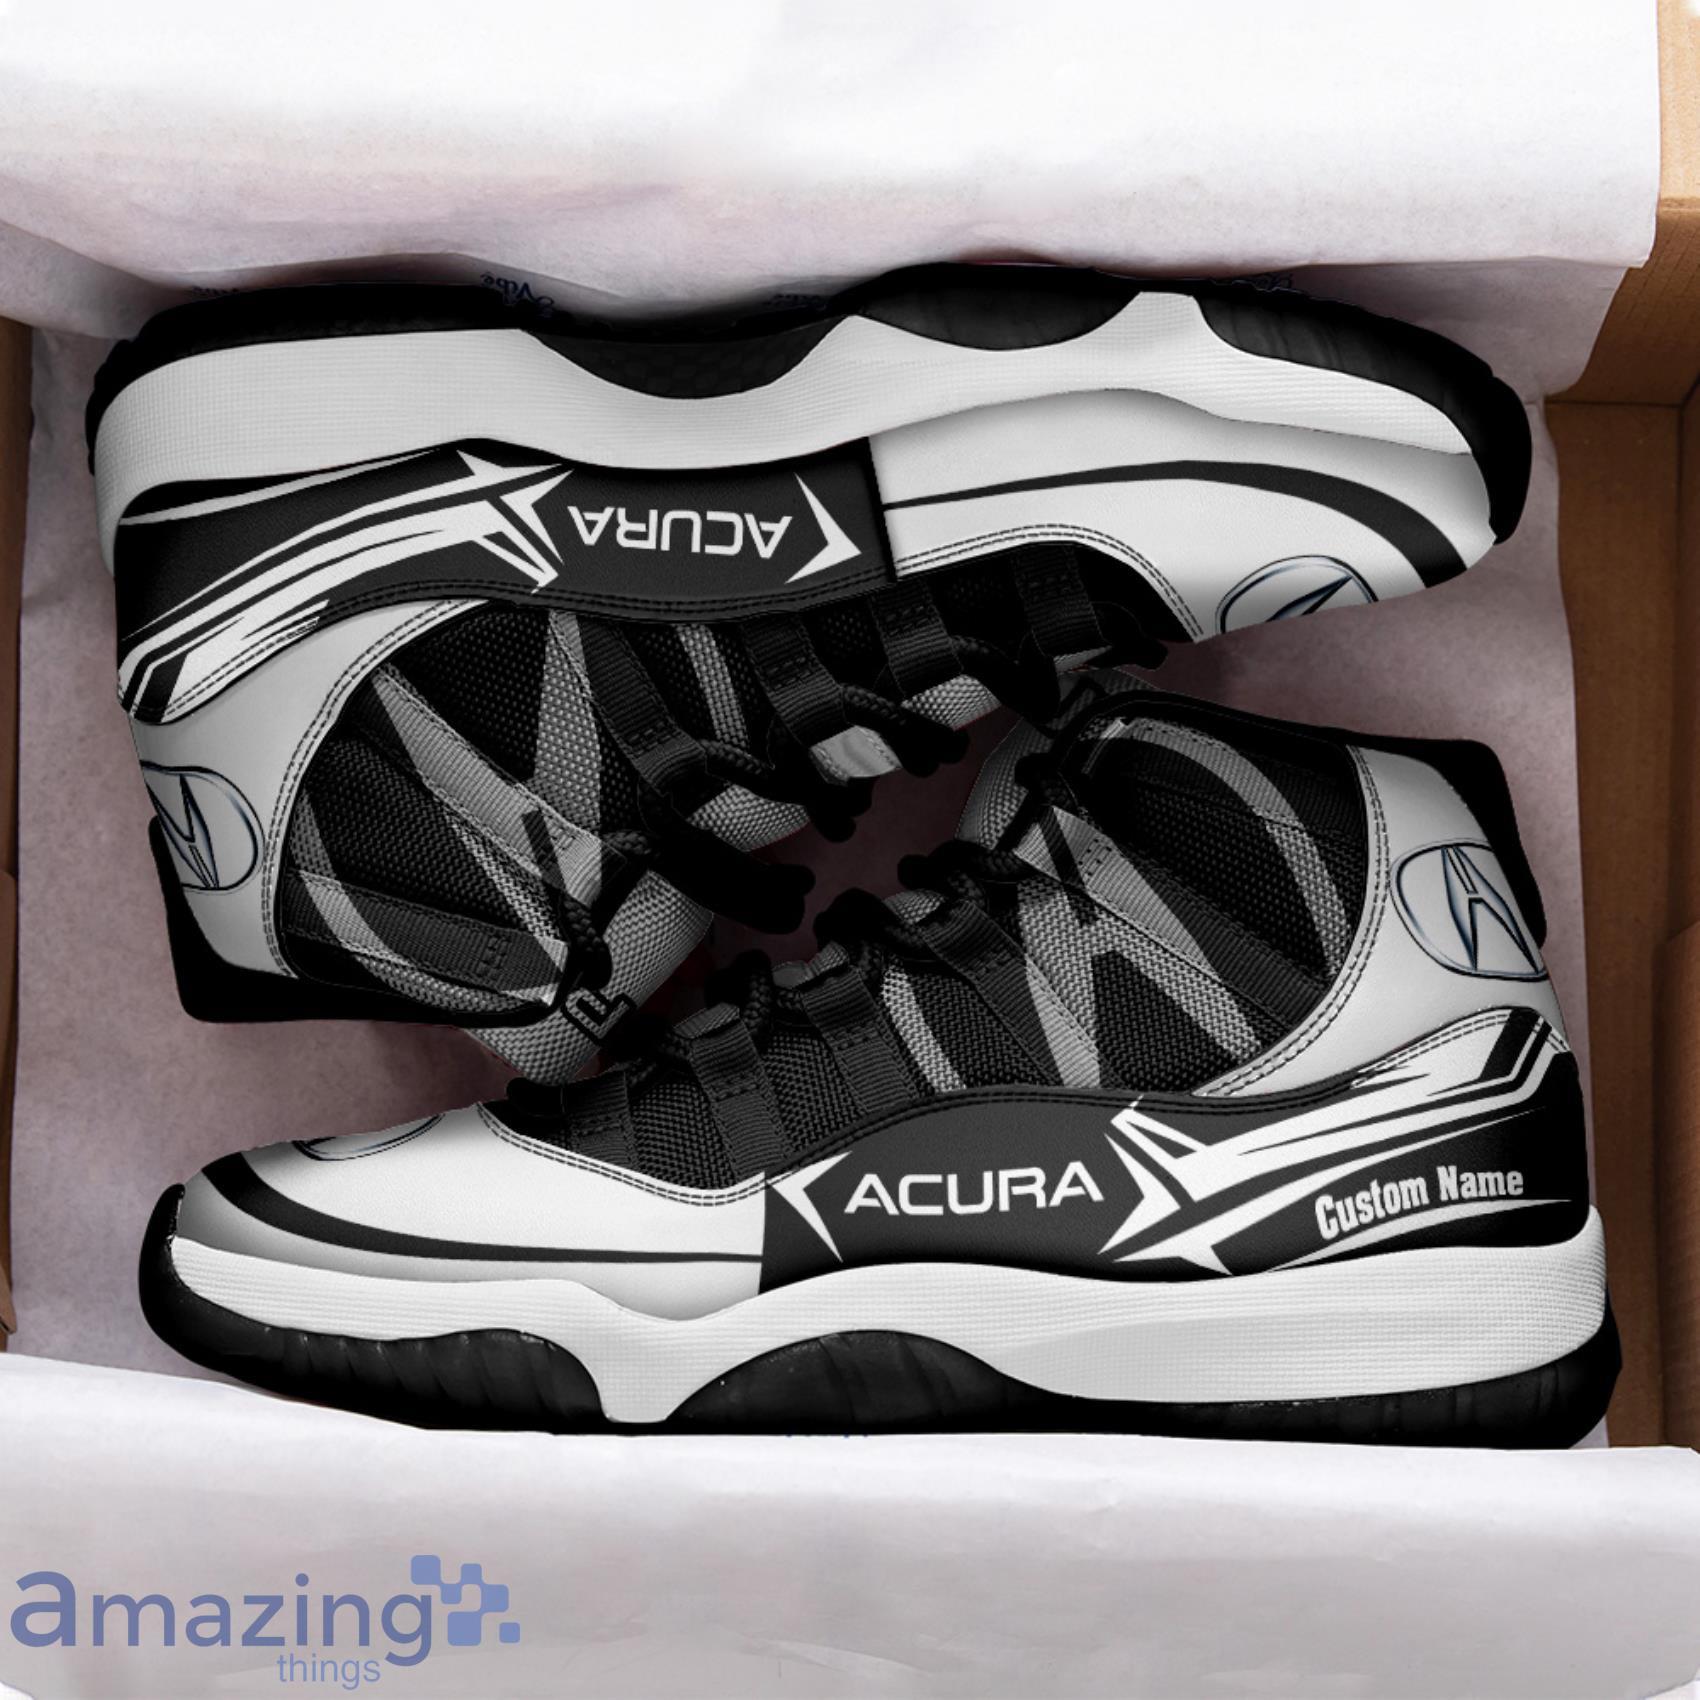 Acura Air Jordan 4 Shoes Running Sneakers Custom Name For Car